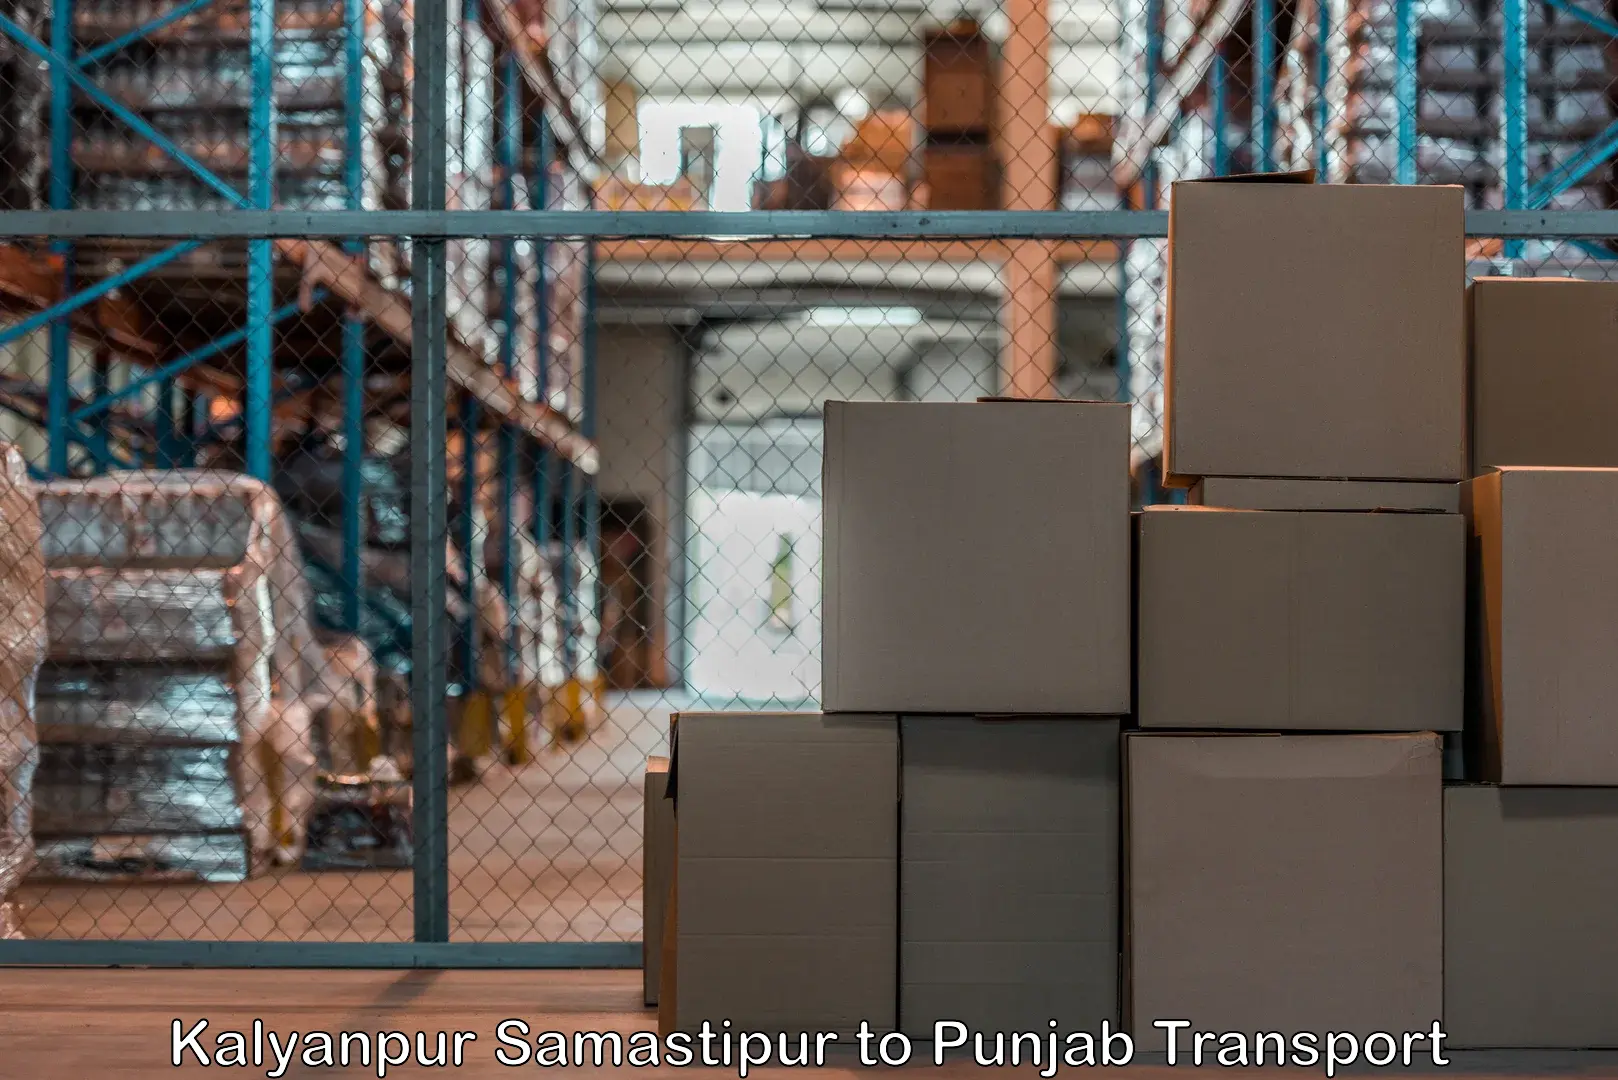 Lorry transport service Kalyanpur Samastipur to Patiala